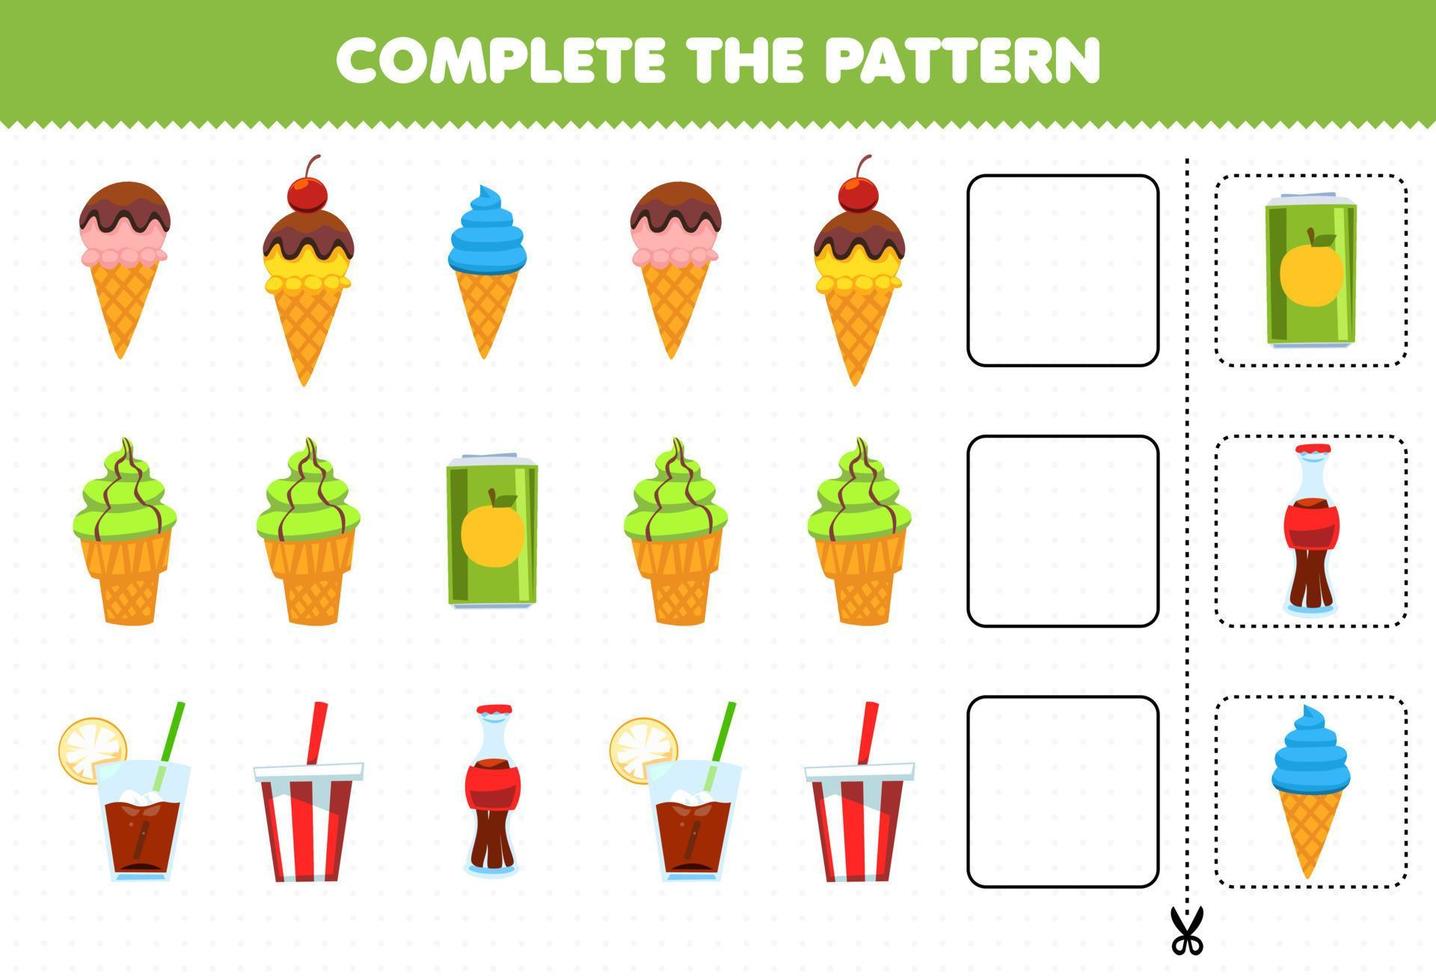 juego educativo para niños complete el patrón de pensamiento lógico encuentre la regularidad y continúe la tarea de la fila con helado y refresco vector